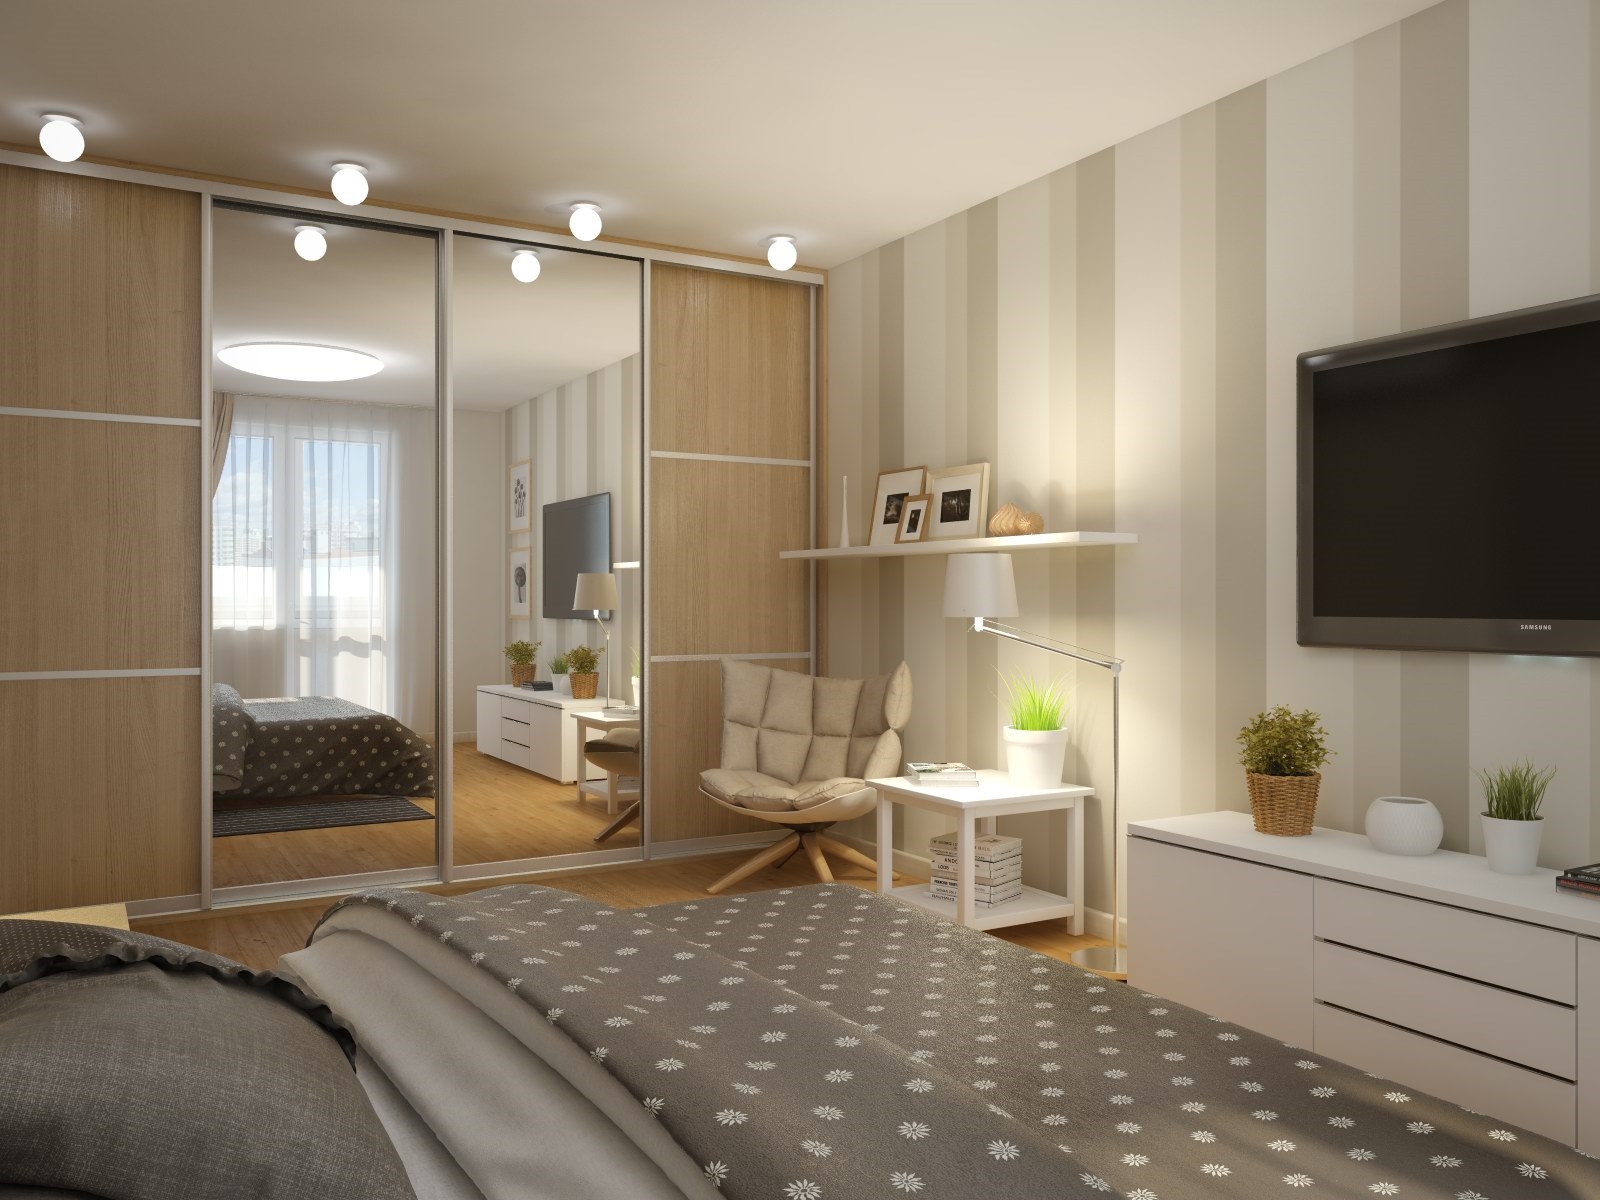 Дизайн комнаты 17 кв.м в однокомнатной квартире » Современный дизайн на Vip-1gl.ru